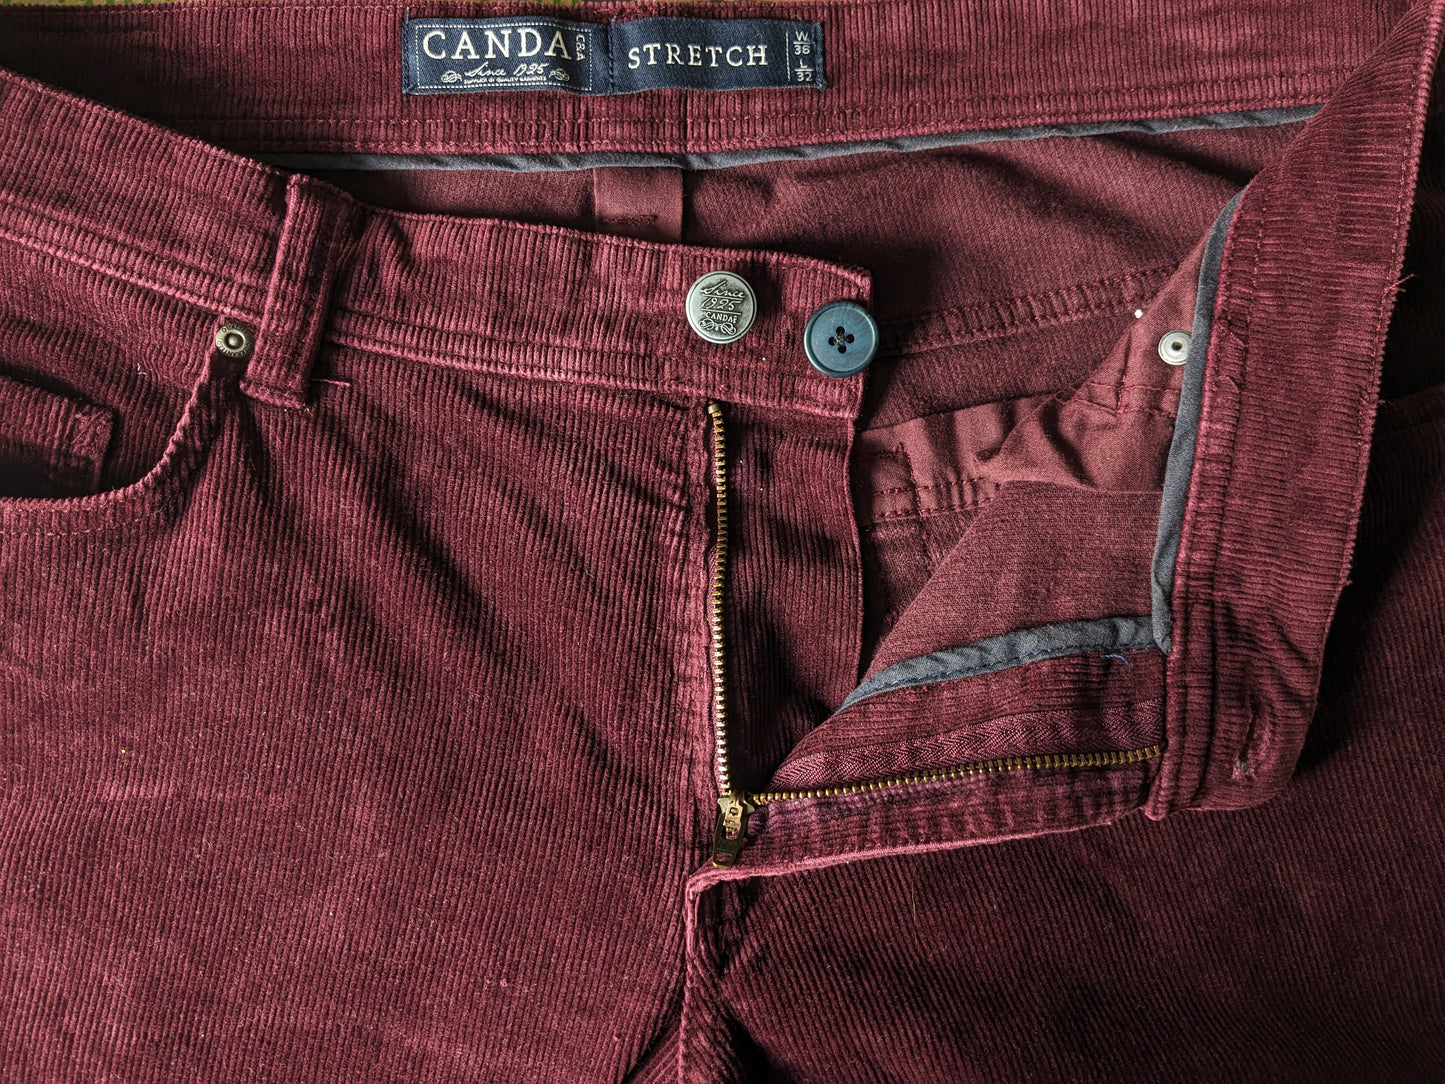 Pantaloni a costole di canda. Bordeaux colorato. Taglia W36 - L32. Stirata.